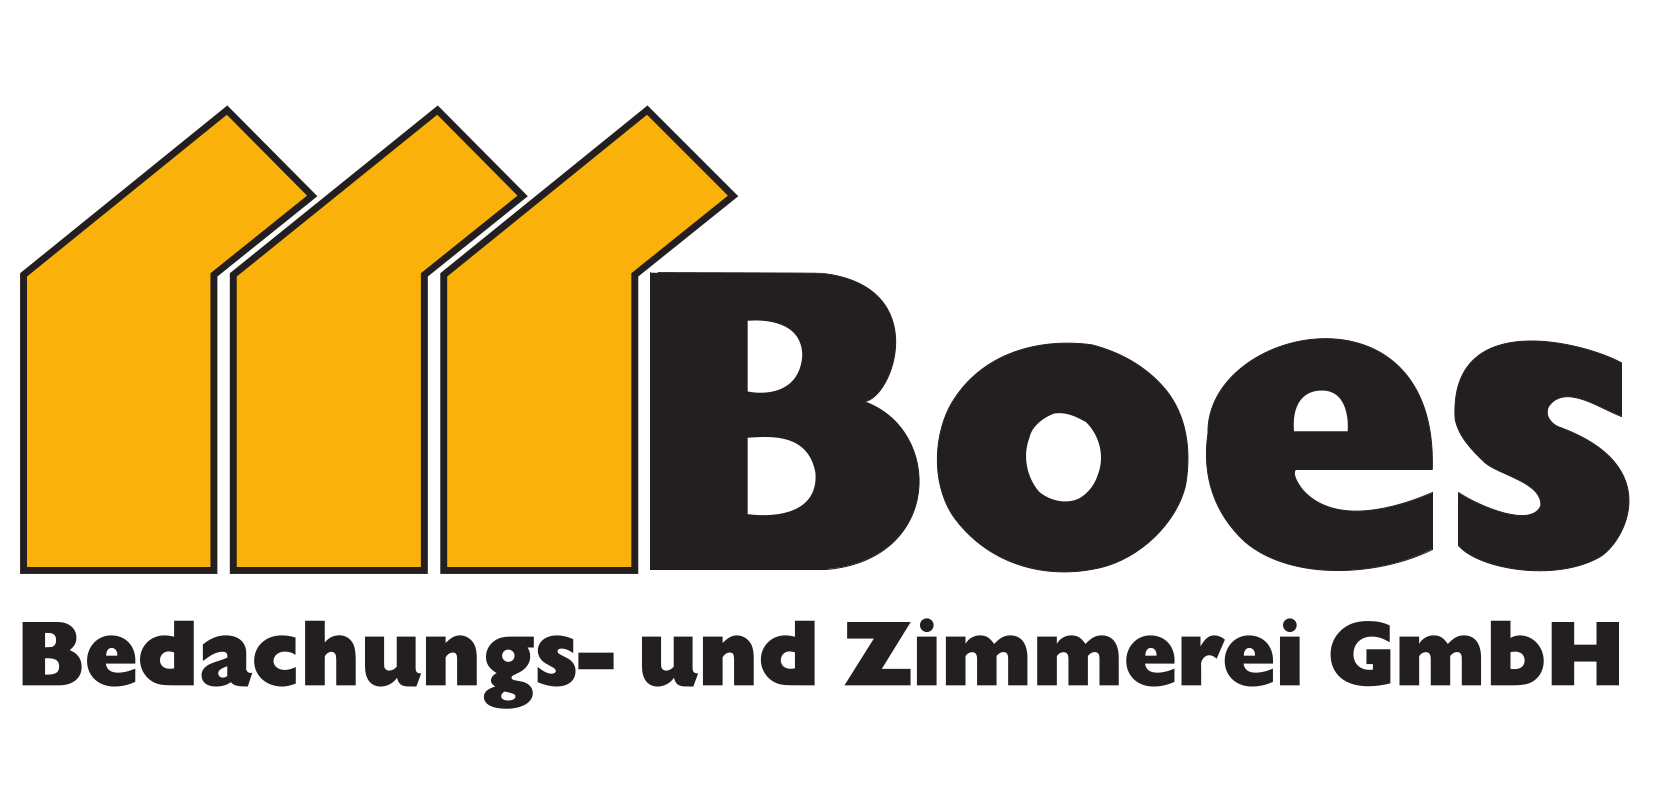 Boes Bedachungen-und Zimmerei GmbH